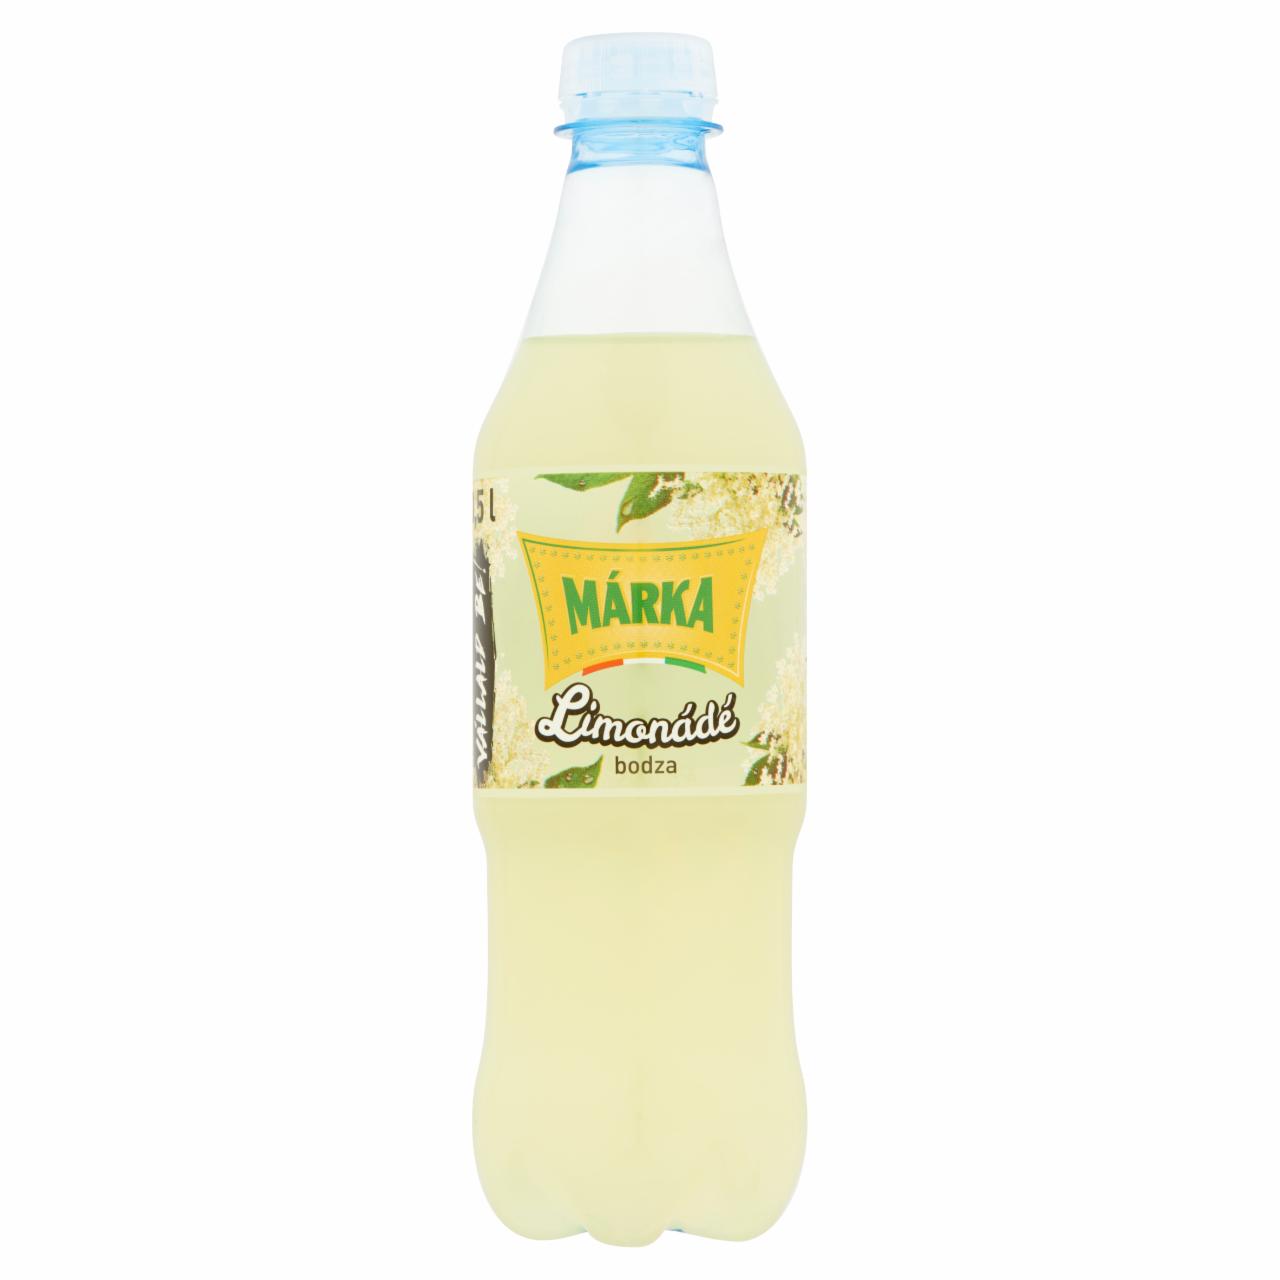 Képek - Márka Limonádé bodza ízű energiamentes szénsavas üdítőital édesítőszerekkel 0,5 l